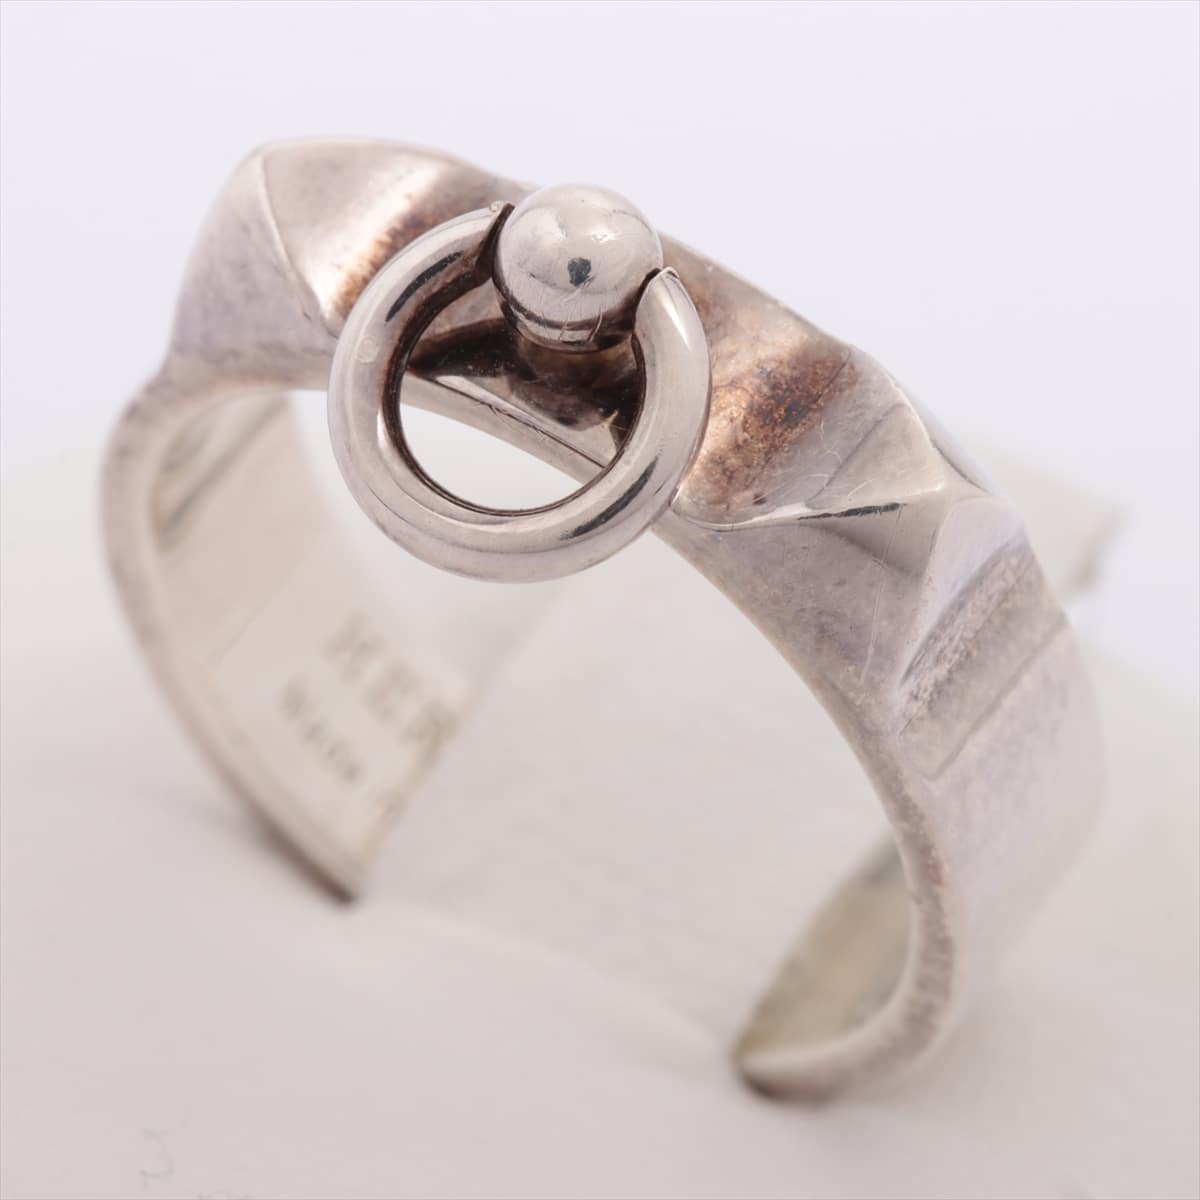 Hermès Collier de Chien rings 925 4.5g Silver